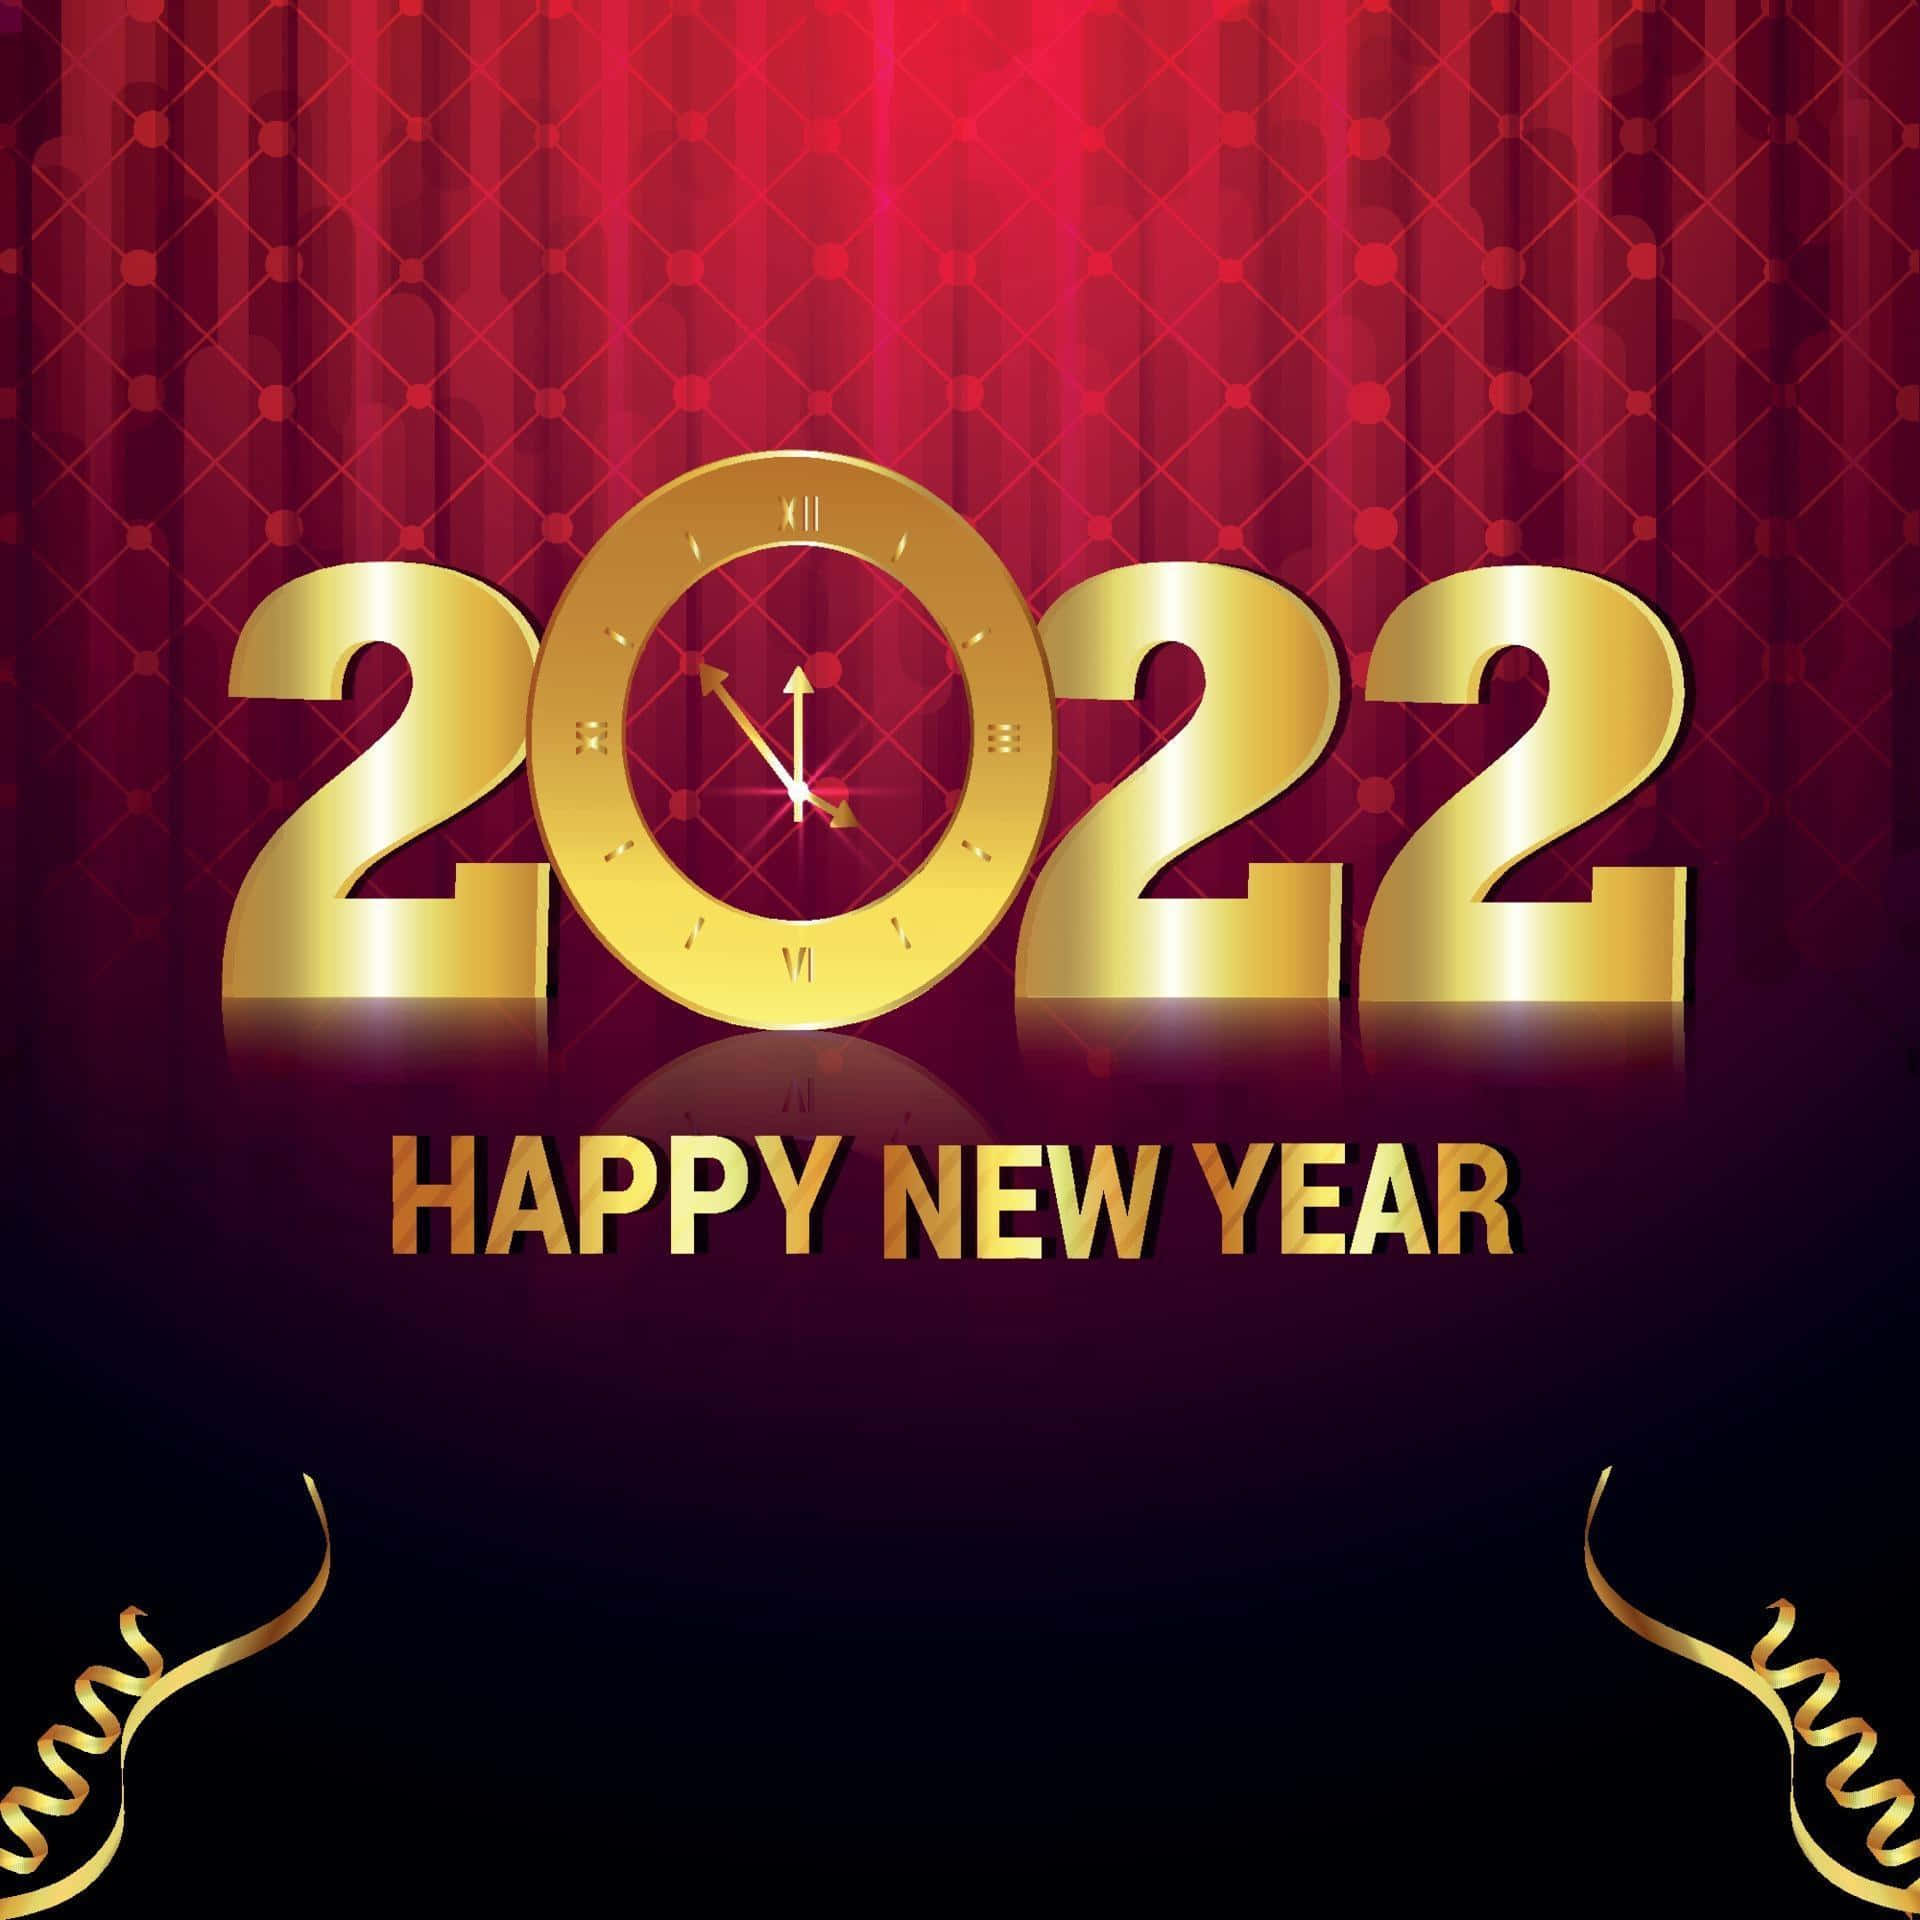 Feliceanno Nuovo 2020 Con Orologio Dorato E Sfondo Rosso